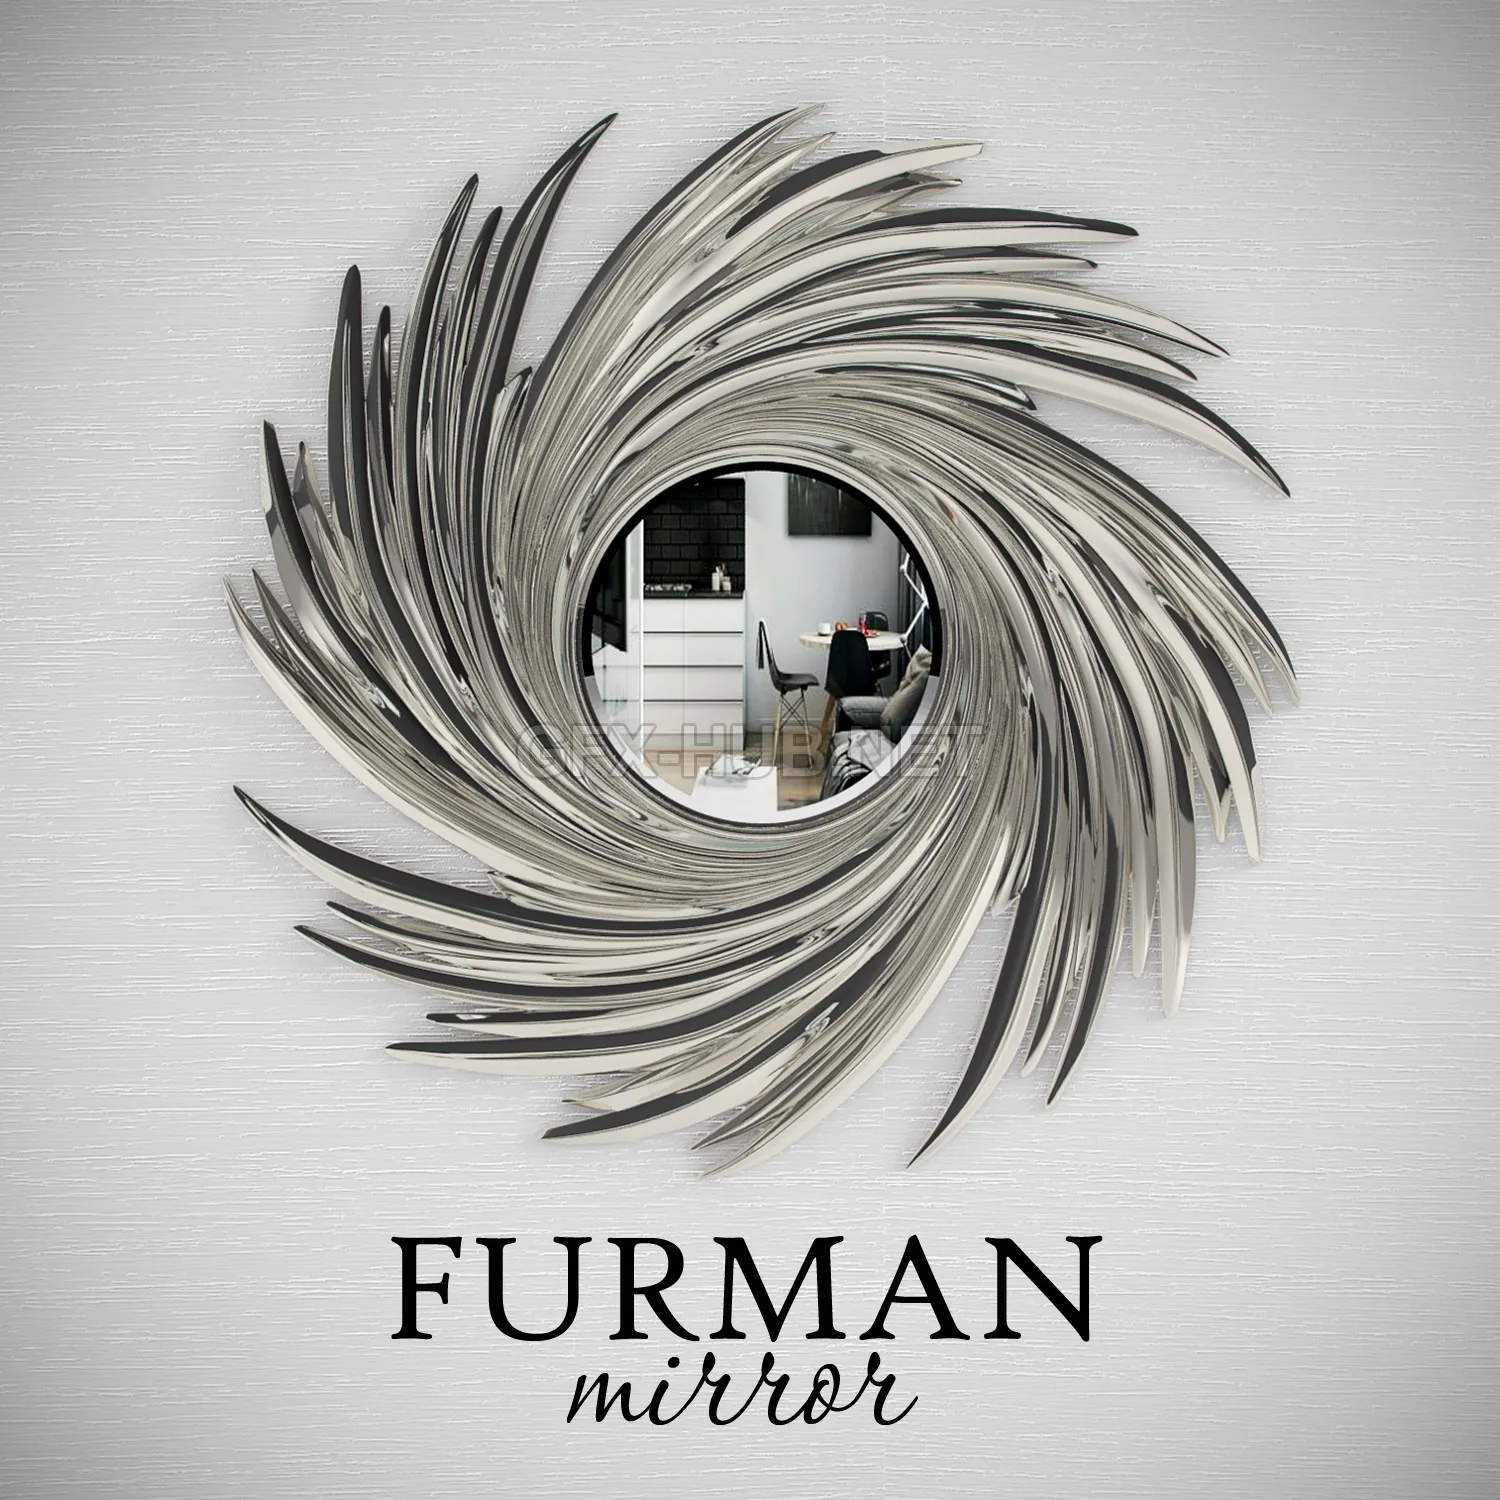 FURNITURE 3D MODELS – Furman mirror